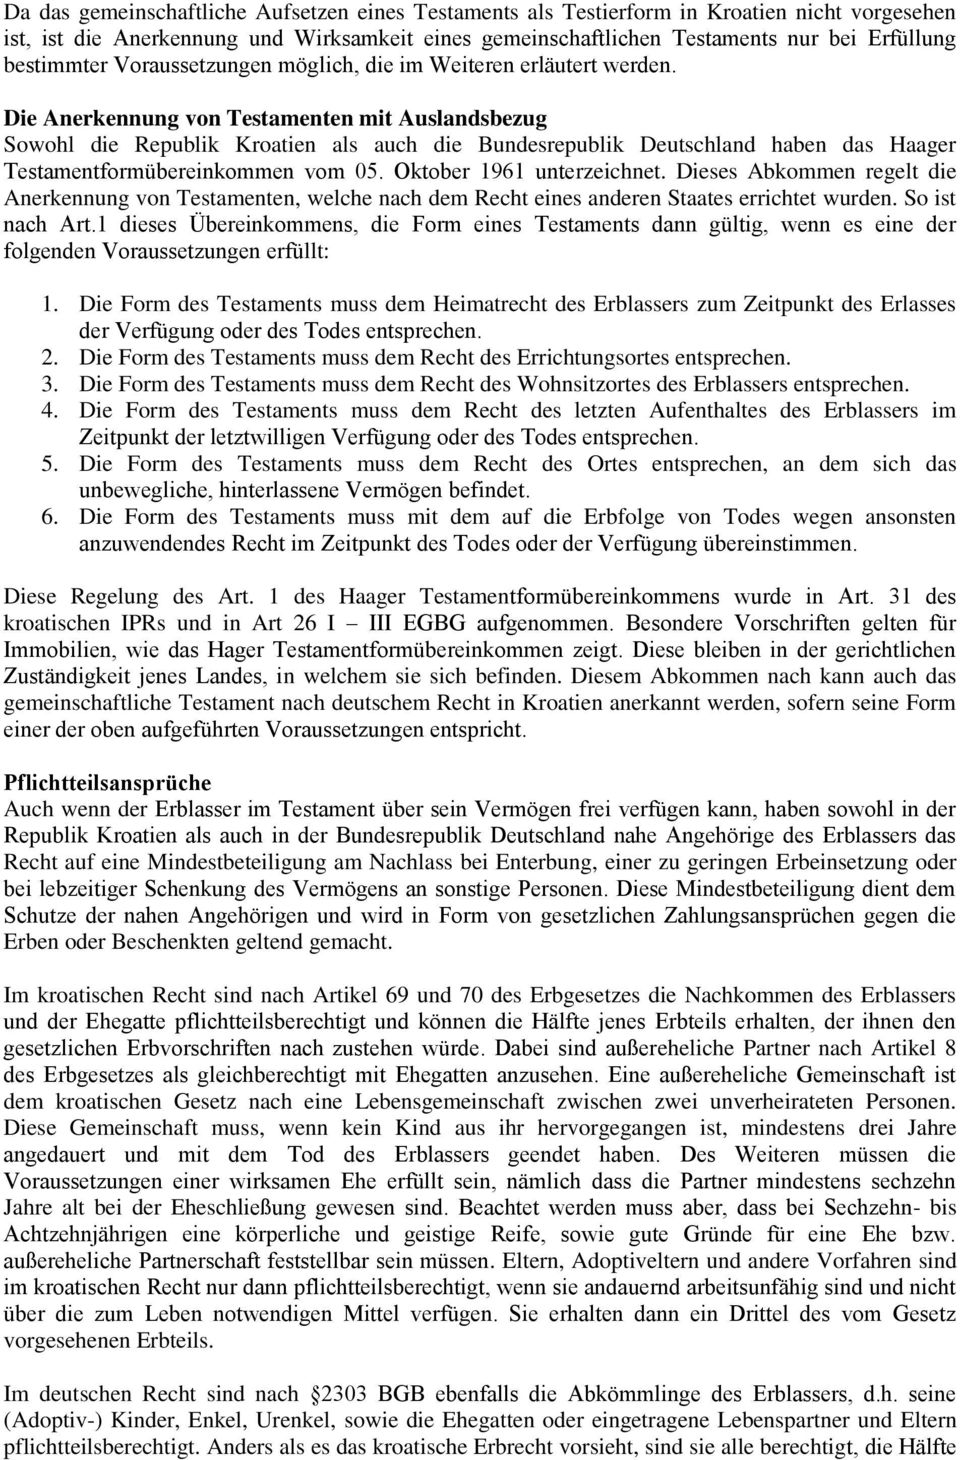 Die Anerkennung von Testamenten mit Auslandsbezug Sowohl die Republik Kroatien als auch die Bundesrepublik Deutschland haben das Haager Testamentformübereinkommen vom 05. Oktober 1961 unterzeichnet.